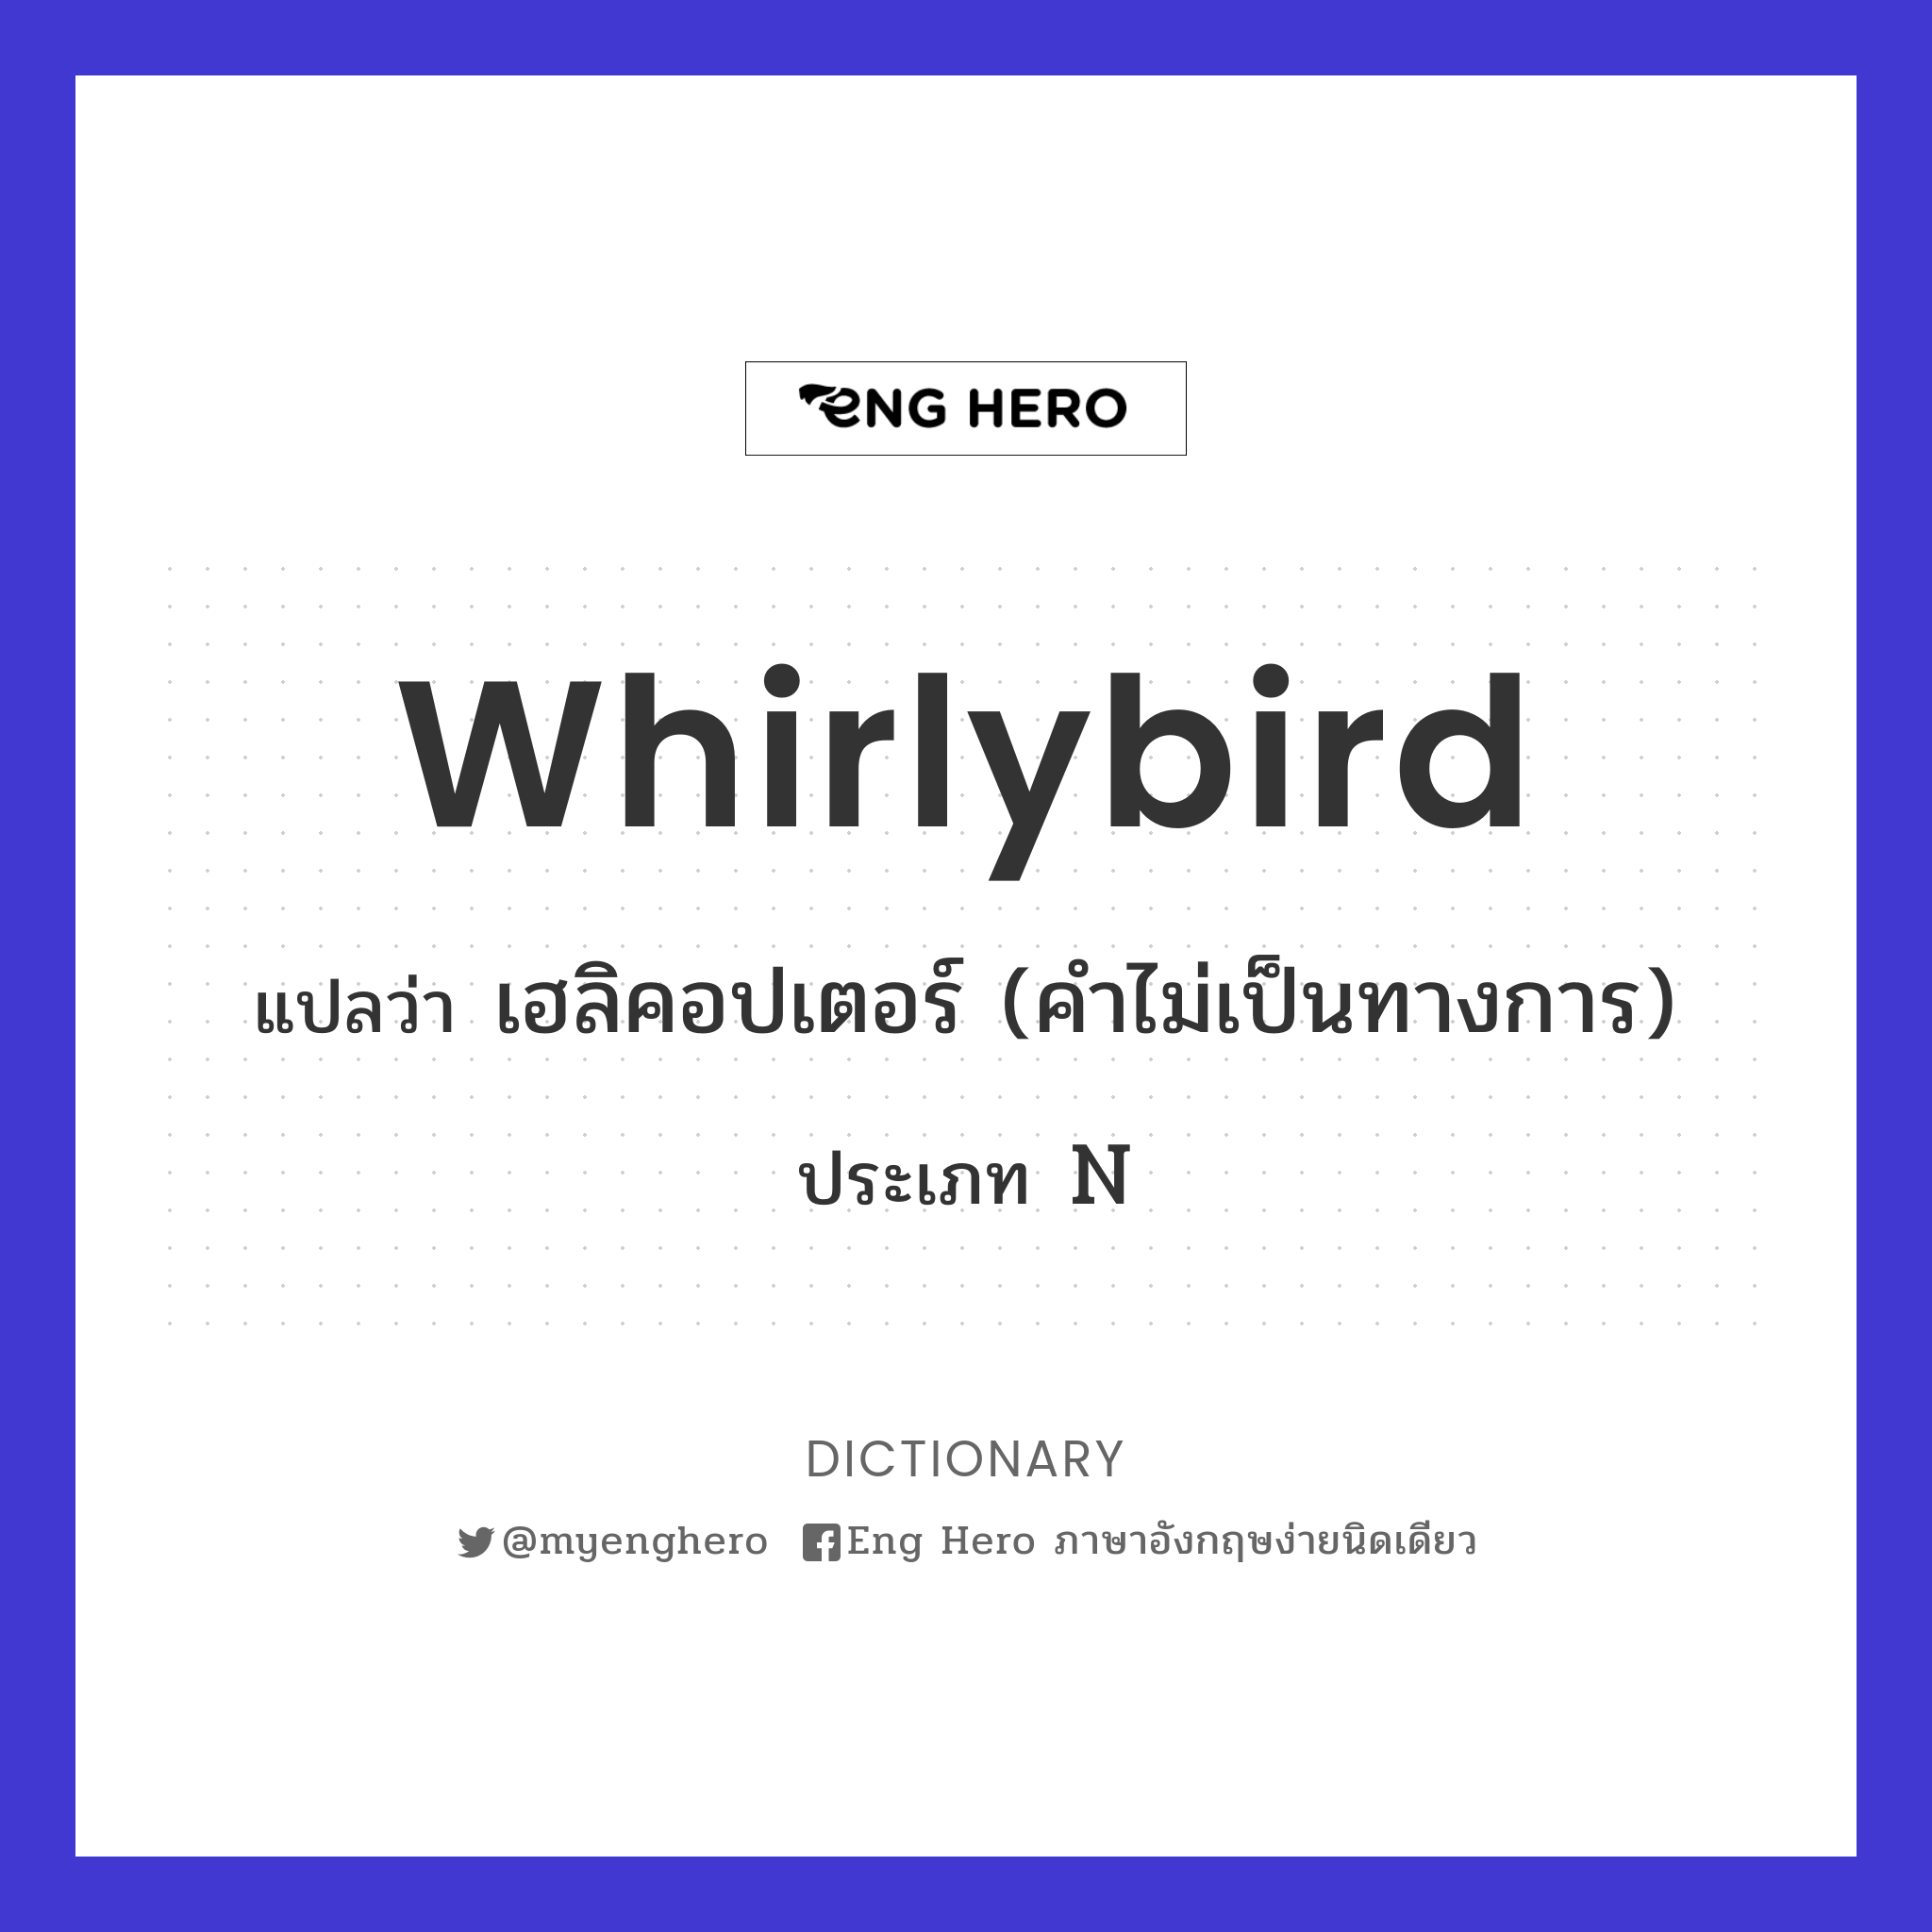 whirlybird